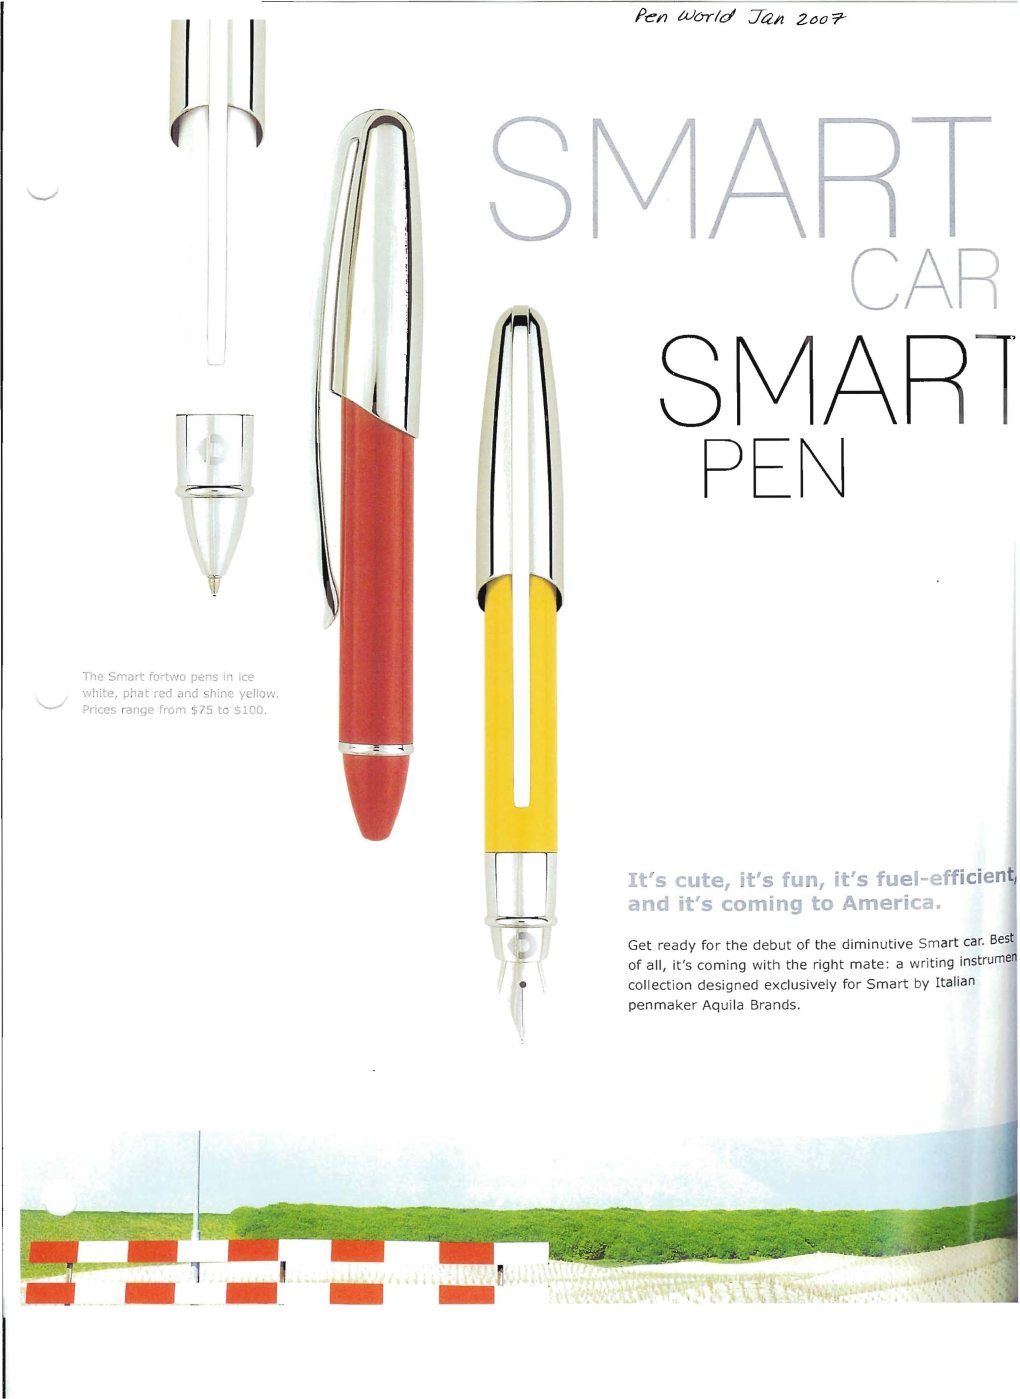 Smart Car, Smart Pen (Aquila)